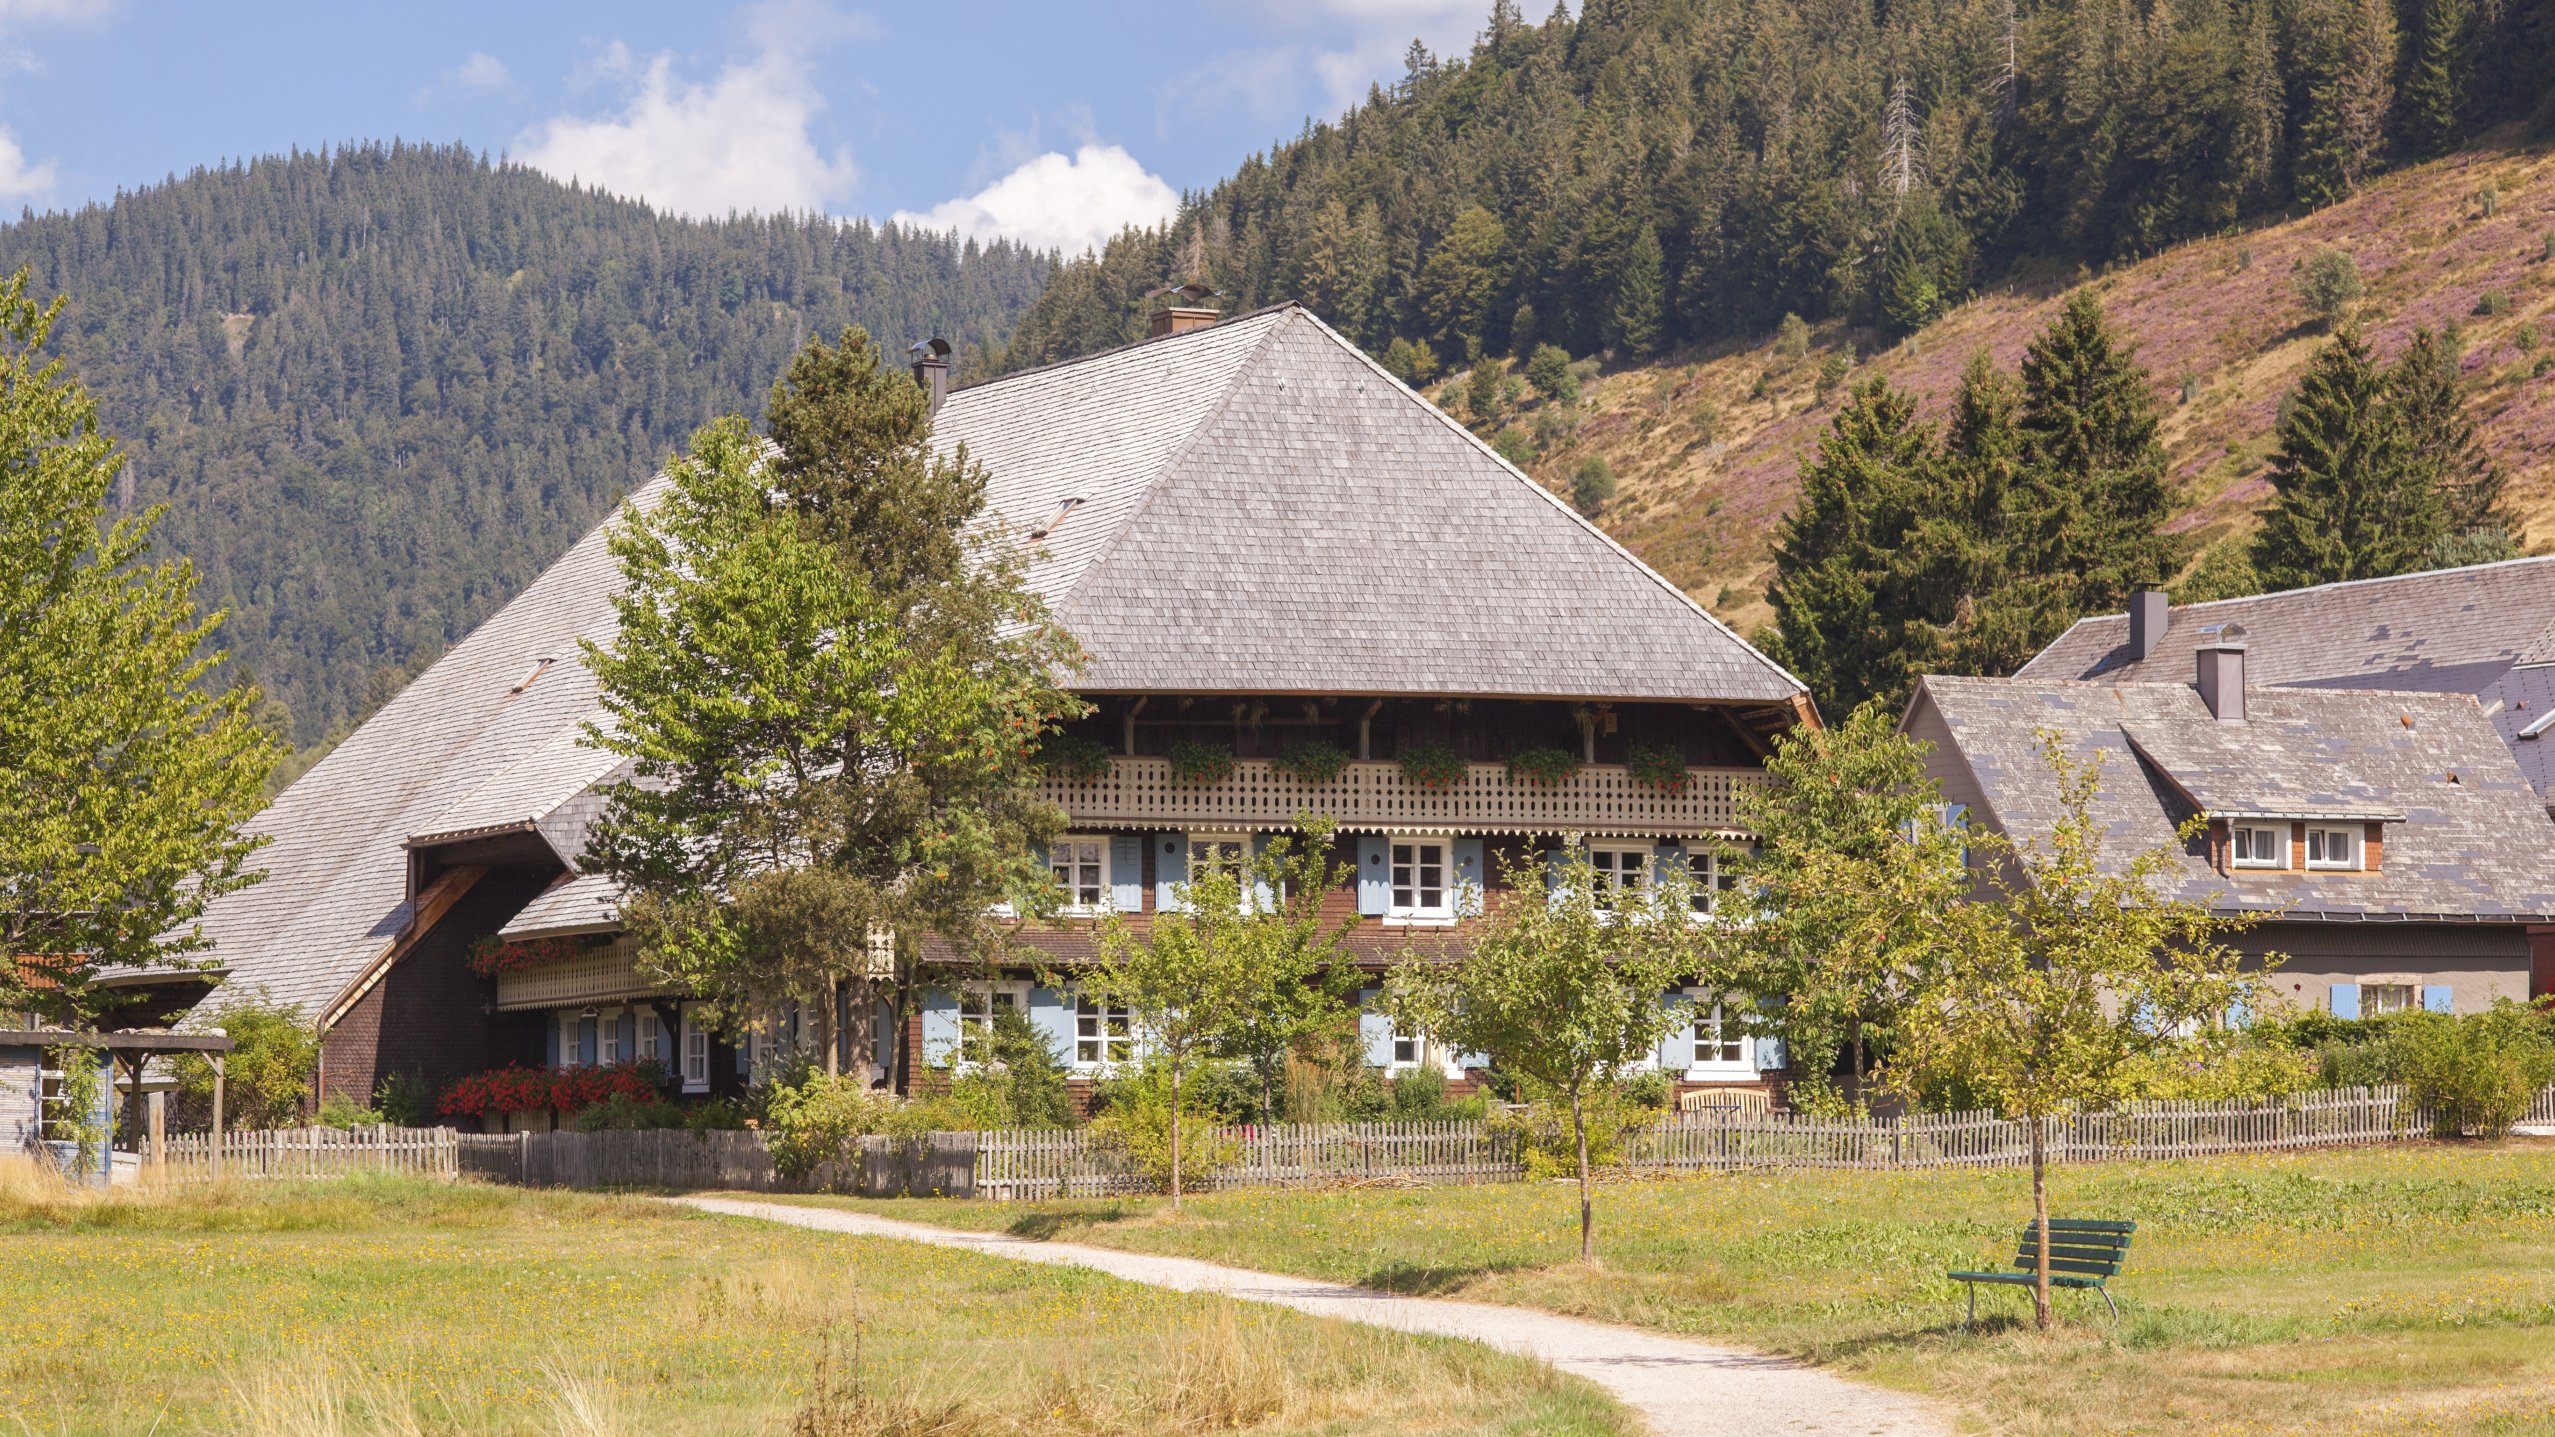  Bauernhaus in Menzenschwand Foto: Hochschwarzwald Tourismus GmbH 